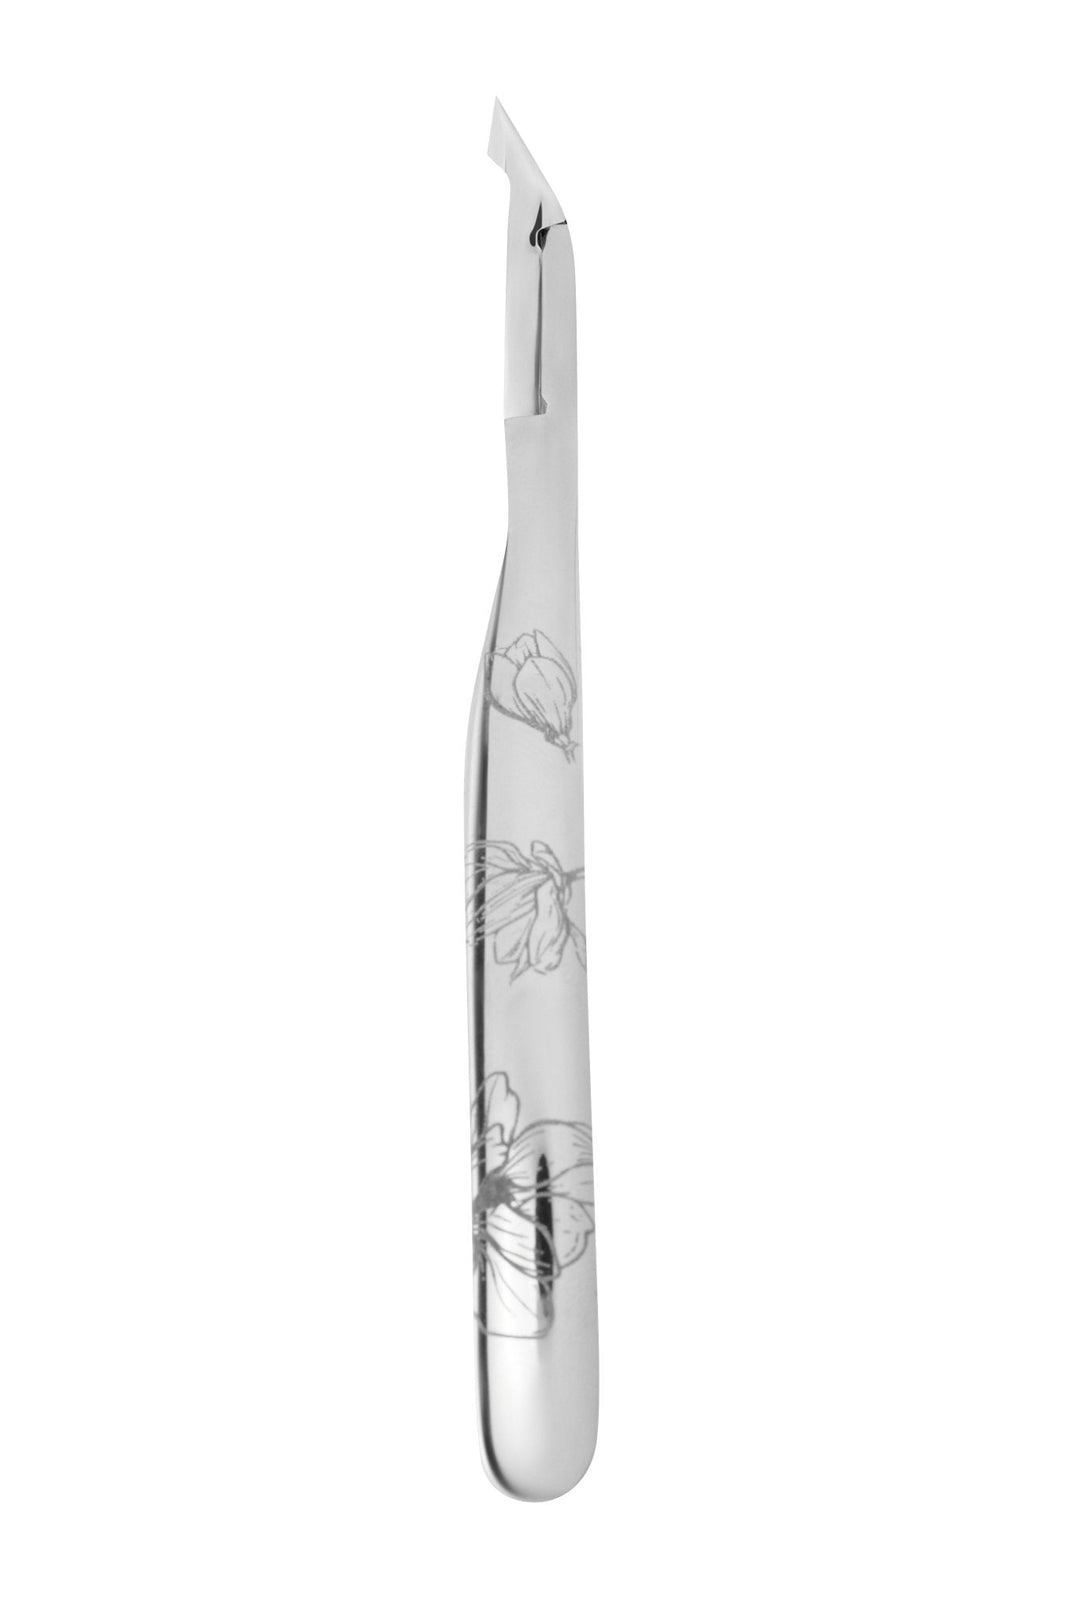 Staleks Cuticle Nipper Exclusive 20 - 5 mm jaw - U-tools